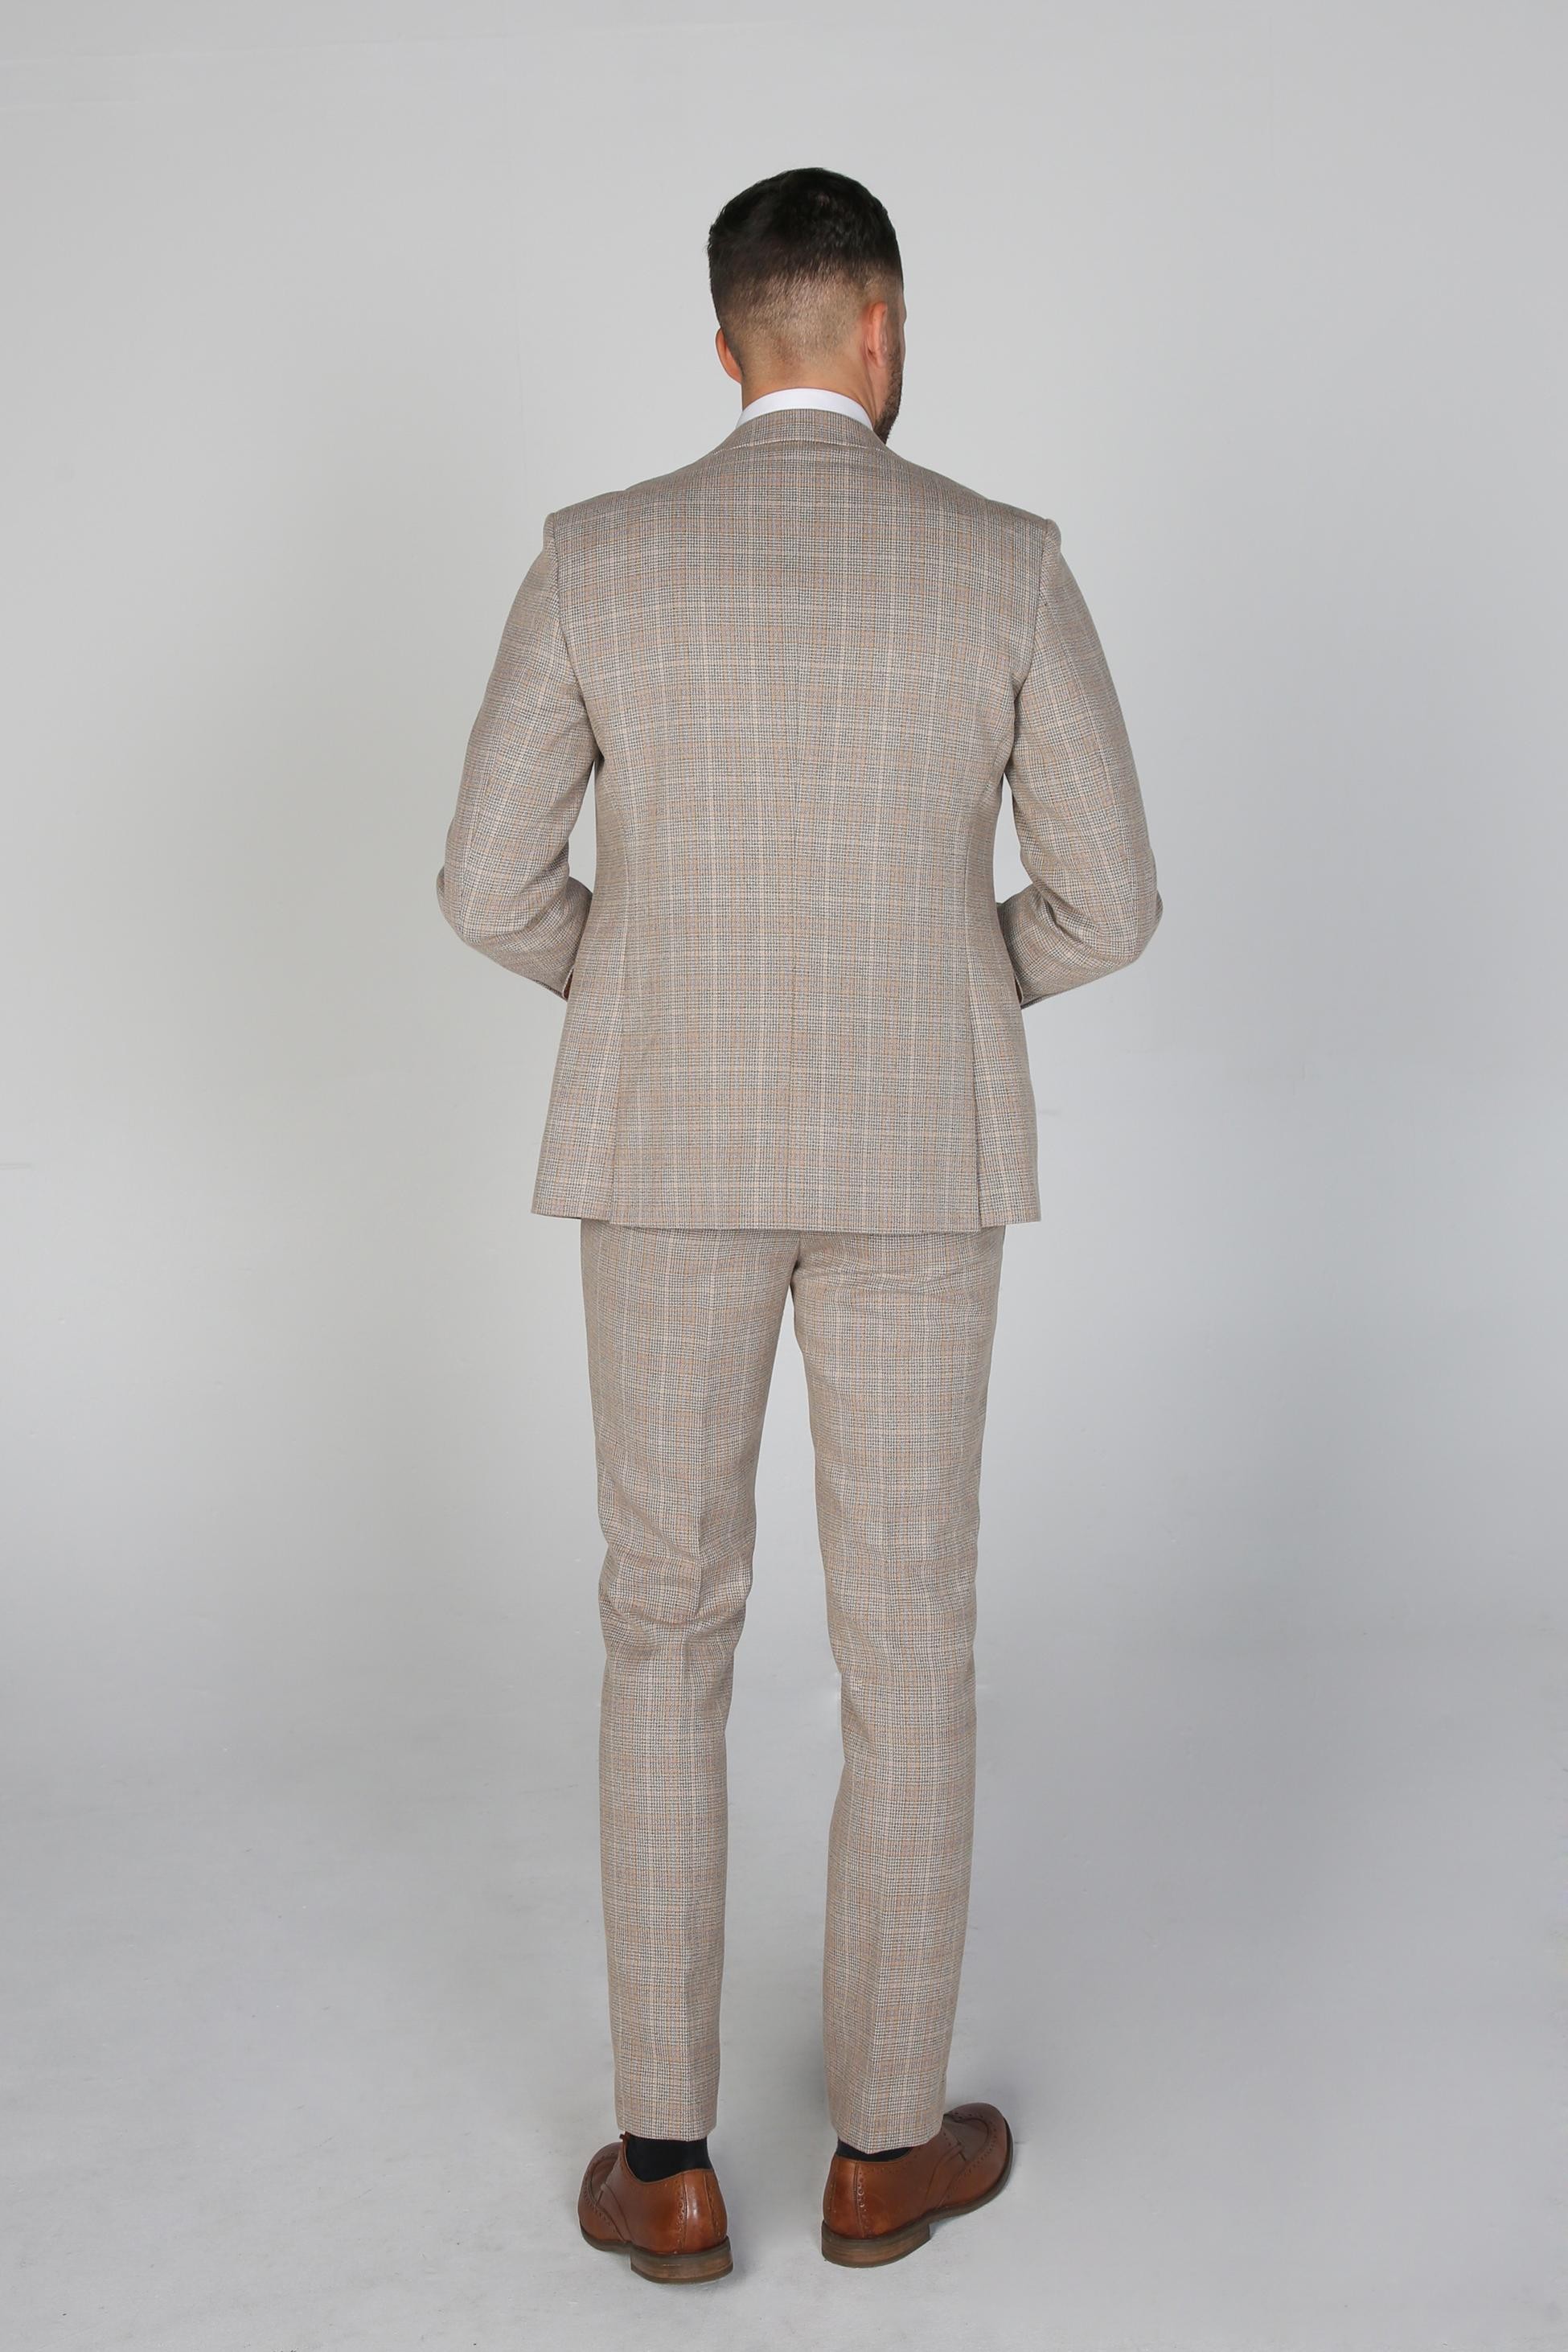 Herren Holland Beige Tweed Check Anzugjacke, Formeller Blazer für alle Anlässe